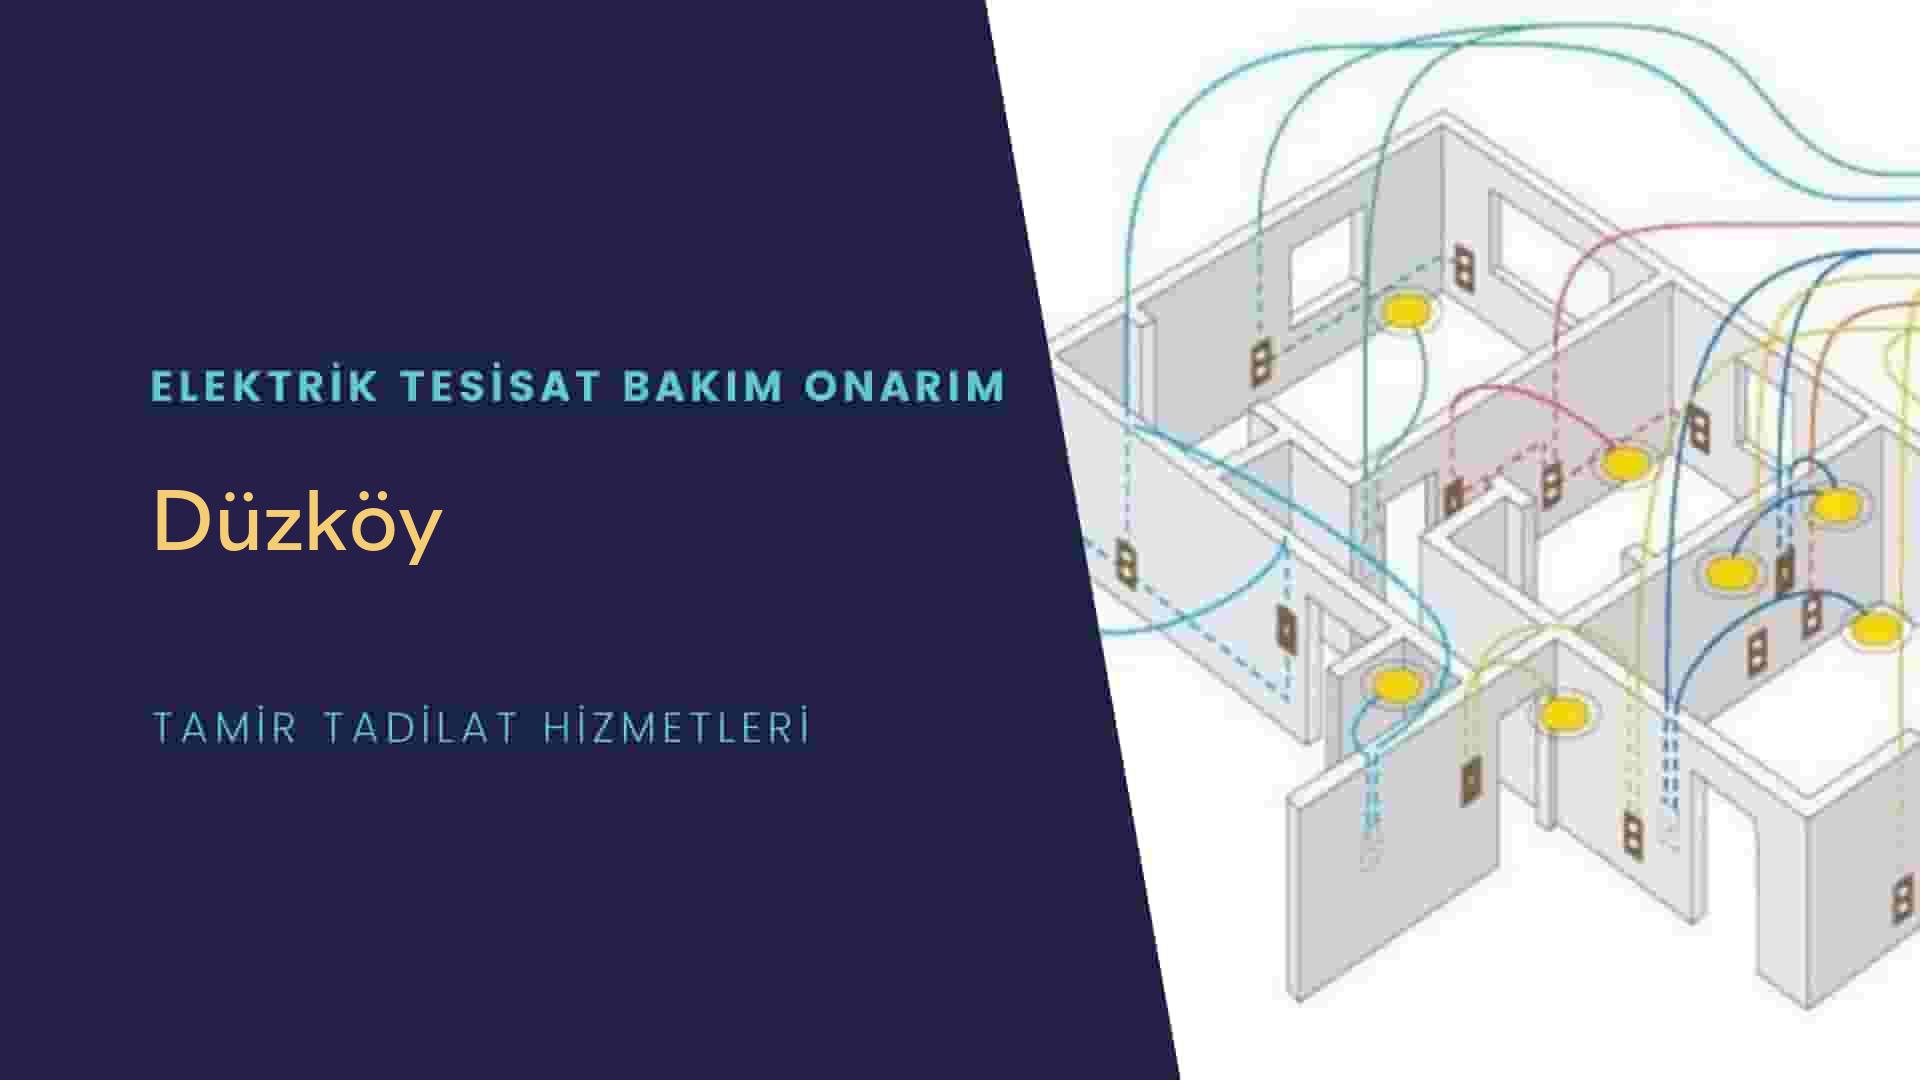 Düzköy'de elektrik tesisatı ustalarımı arıyorsunuz doğru adrestenizi Düzköy elektrik tesisatı ustalarımız 7/24 sizlere hizmet vermekten mutluluk duyar.